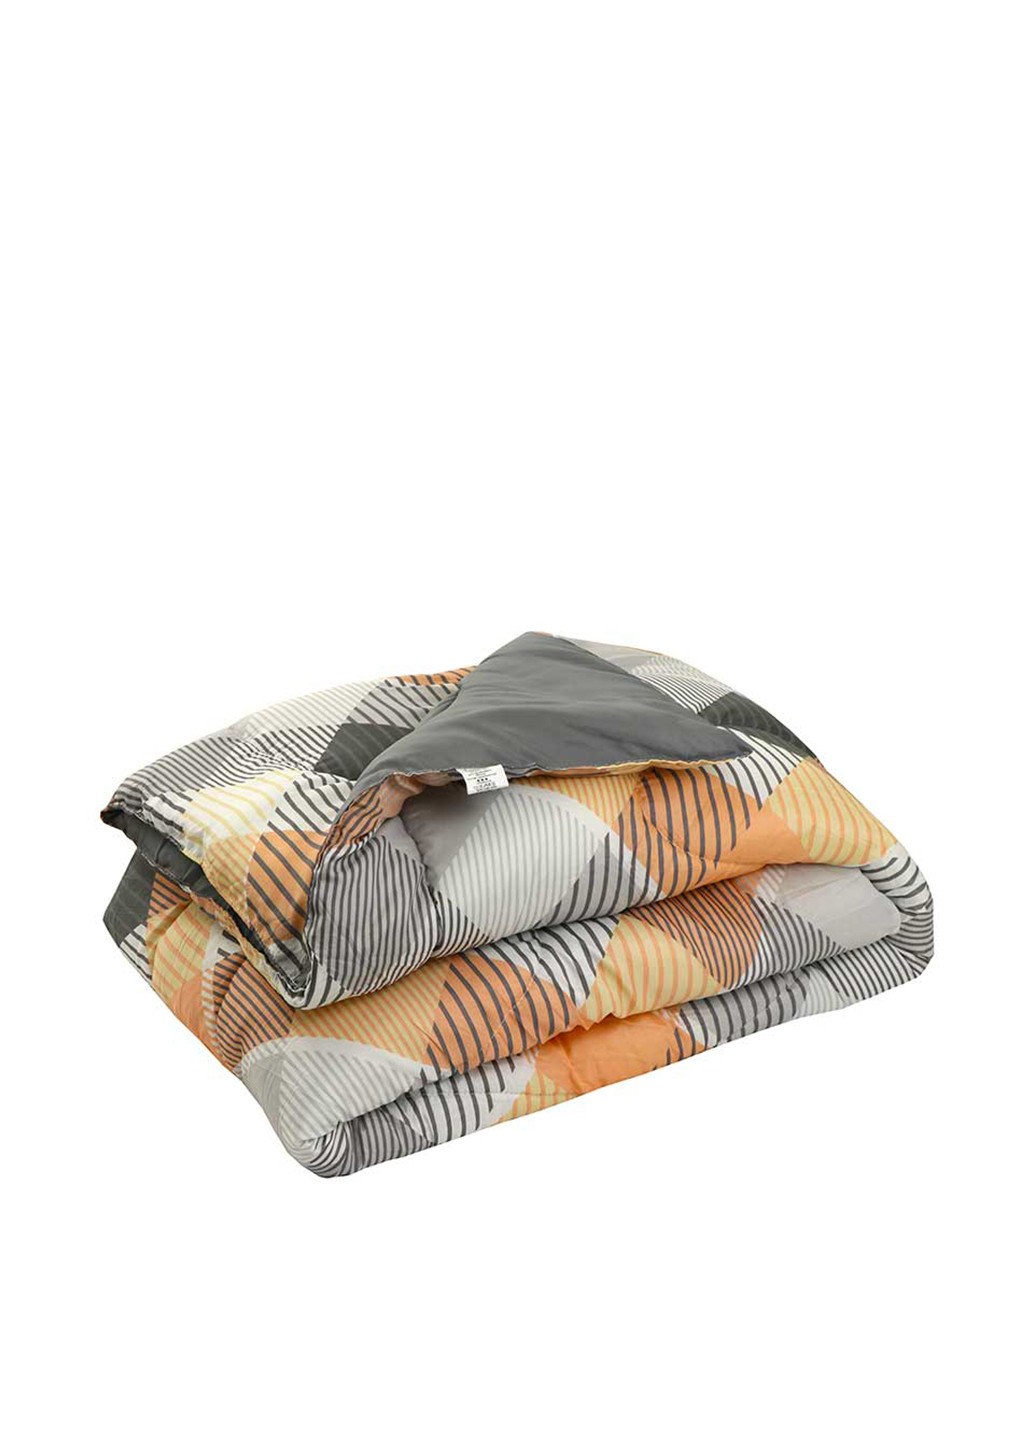 Одеяло, 140х205 см Руно полоска комбинированное